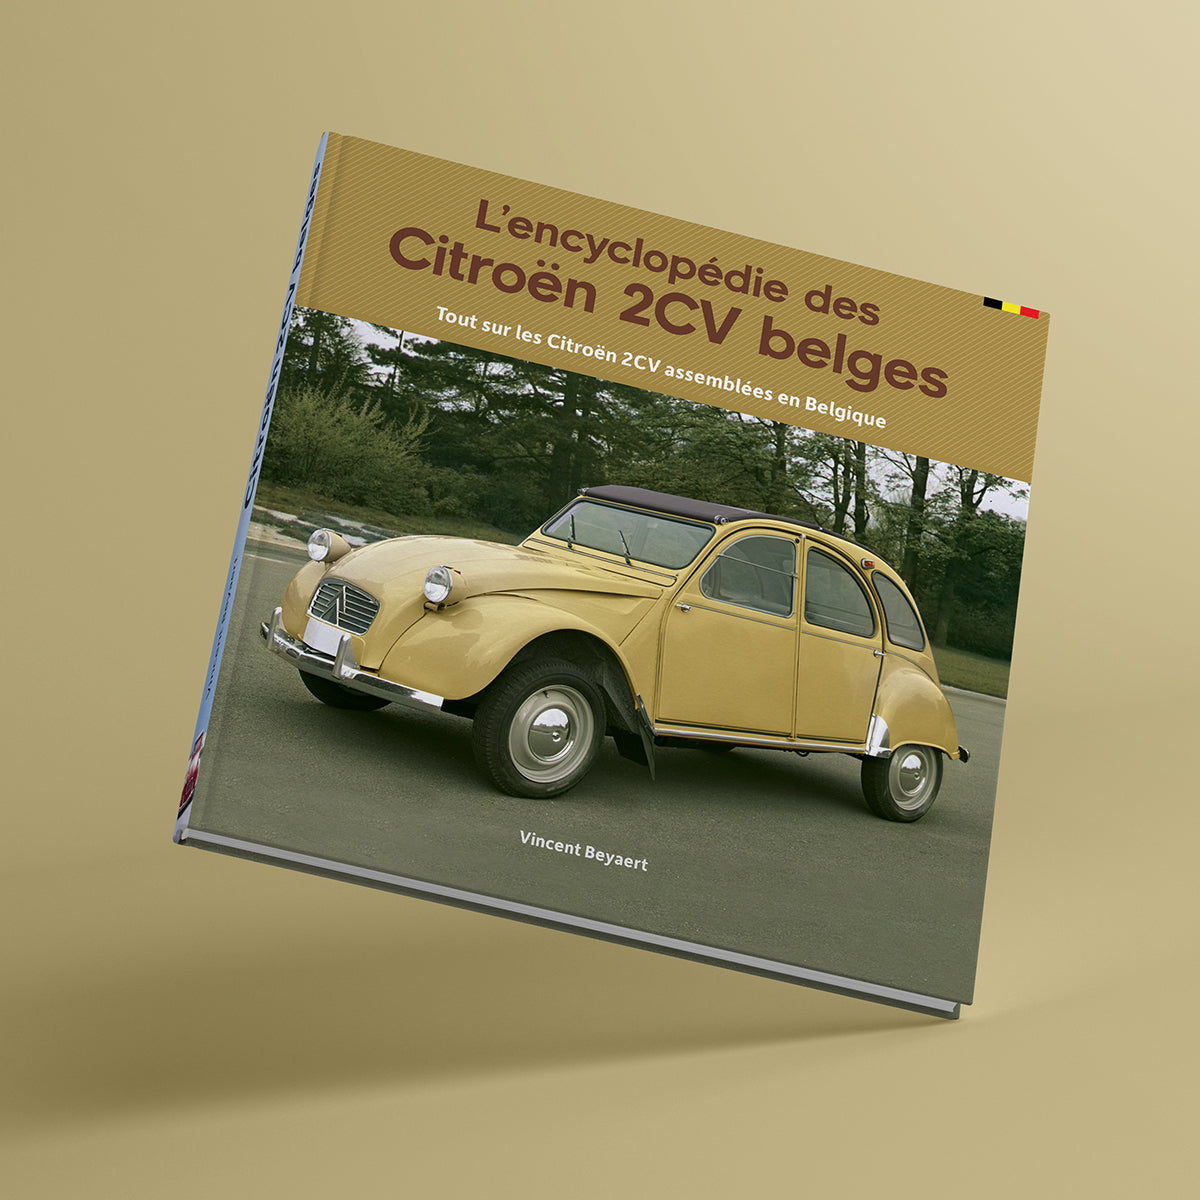 L'encyclopédie des Citroën 2CV belges